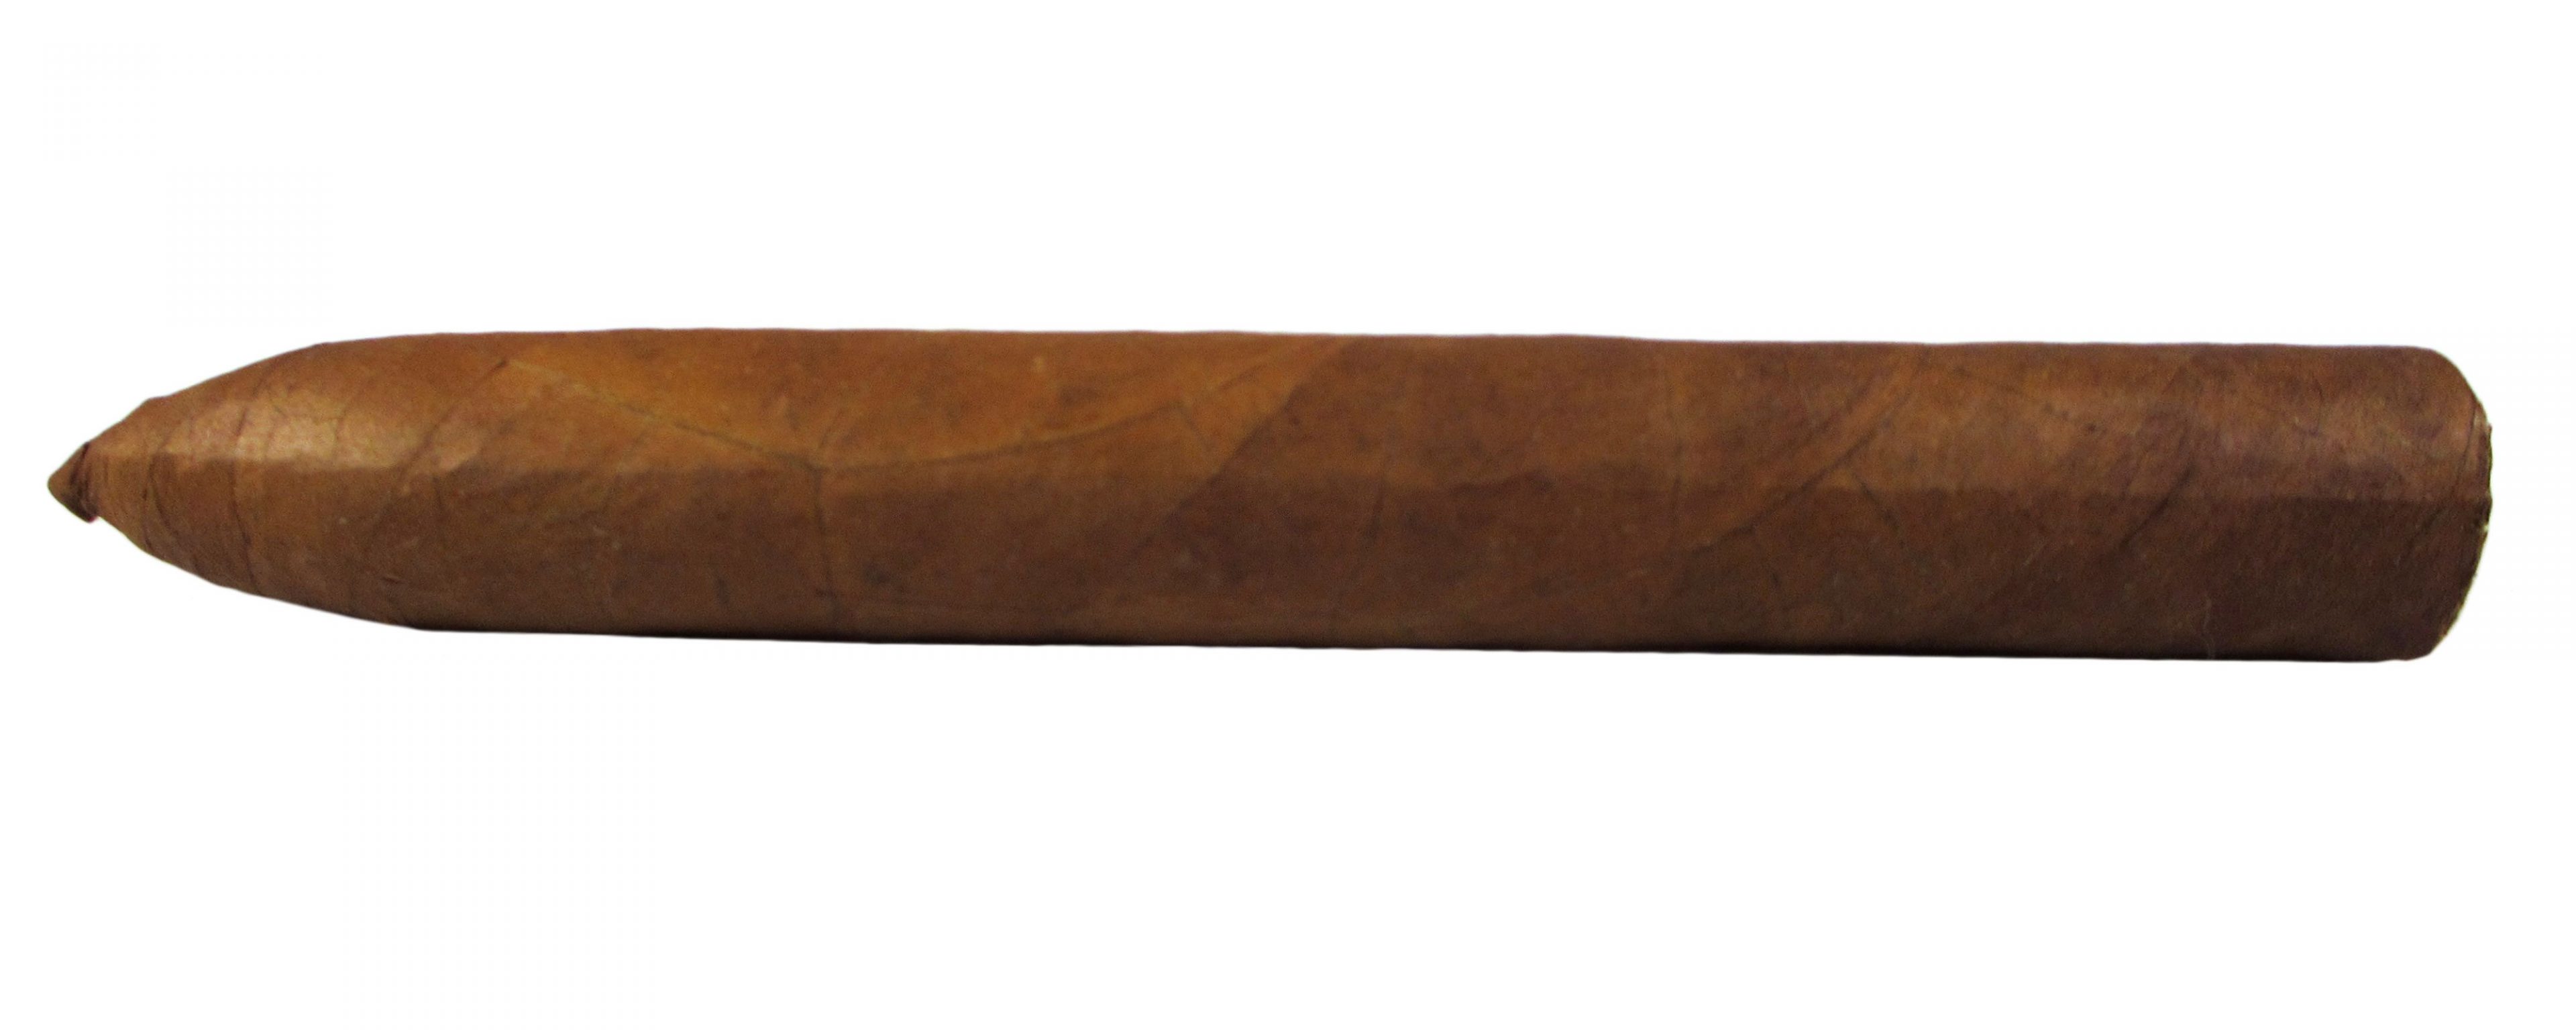 Blind Cigar Review: Las Cumbres Tabaco | Señorial Belicoso No.2